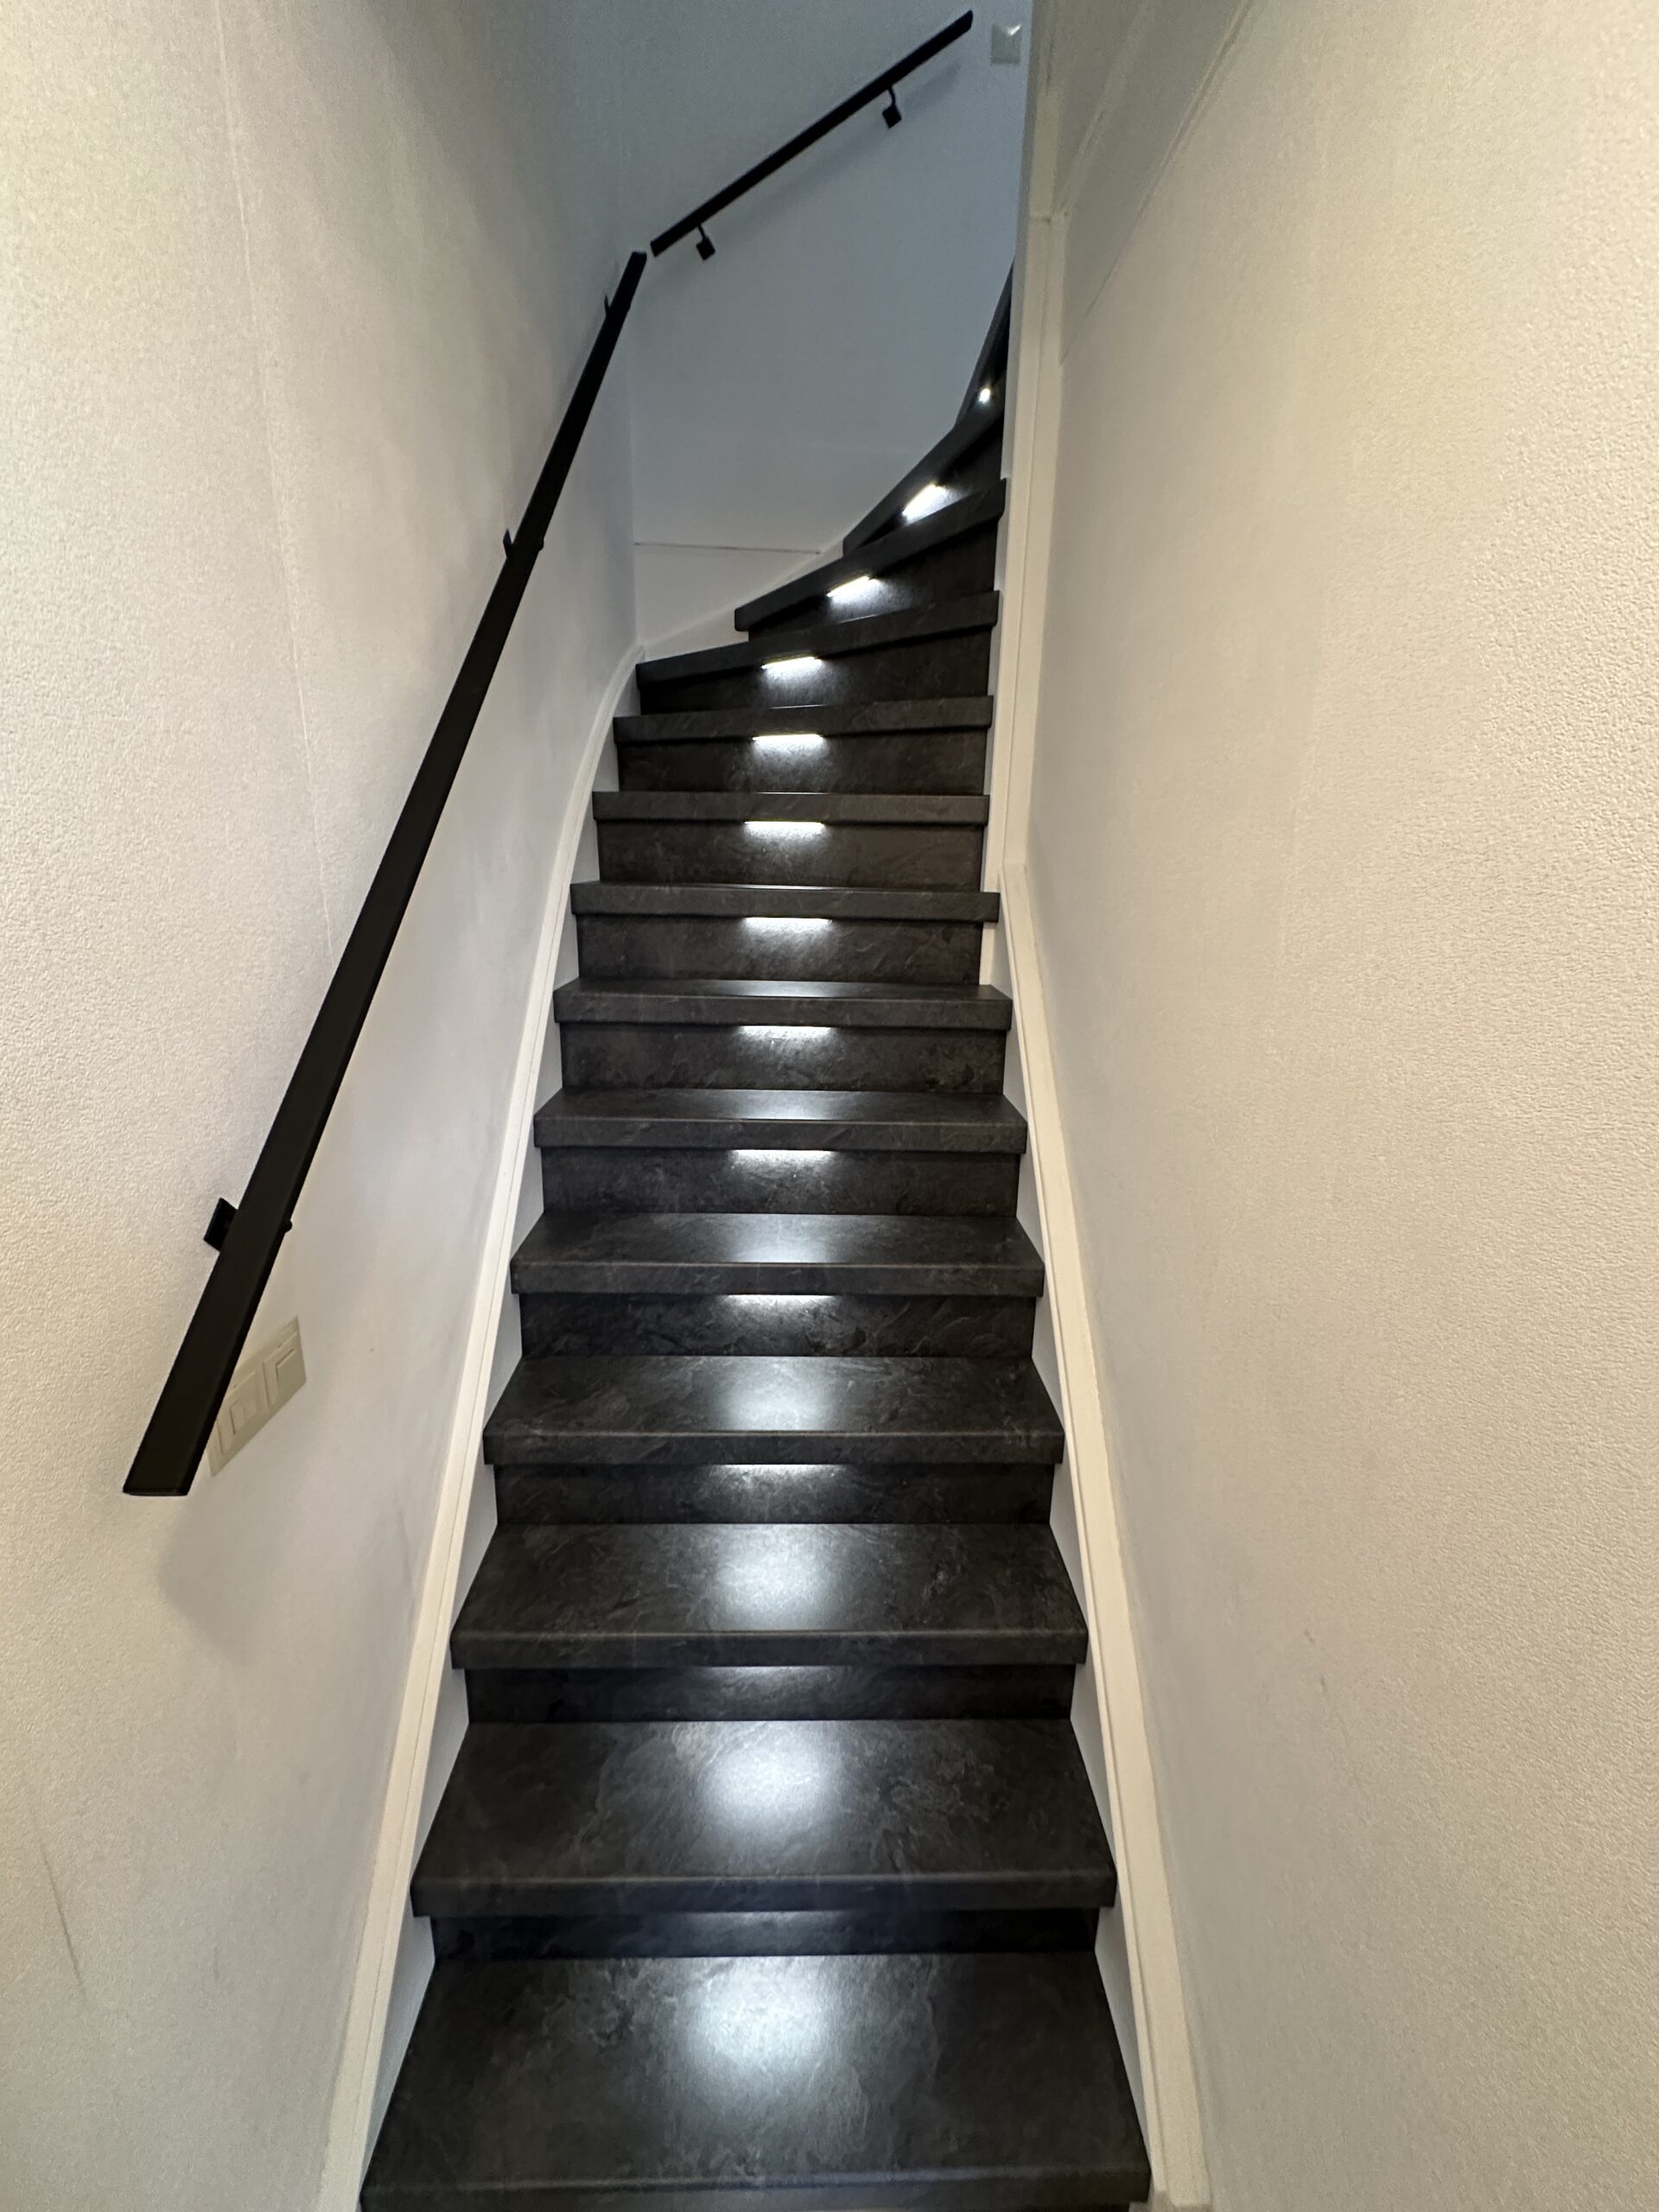 In Den Haag is deze trap gerenoveerd met het stijlvolle Mustang decor op de treden en stootborden. De uitlooptrede is afgewerkt met een zilverkleurig aluminium profiel. Dankzij draadloze bewegingssensoren wordt de LED-verlichting automatisch geactiveerd wanneer je de trap nadert. Bovendien kun je eenvoudig de gewenste kleurtemperatuur instellen via een handige app. Ook hebben we de trapleuningen mogen vervangen, de klant koos voor de zwart gepoedercoate trapleuningen plat van vorm (1,5 x 4 cm) met mooie bijpassende leuninghouders.